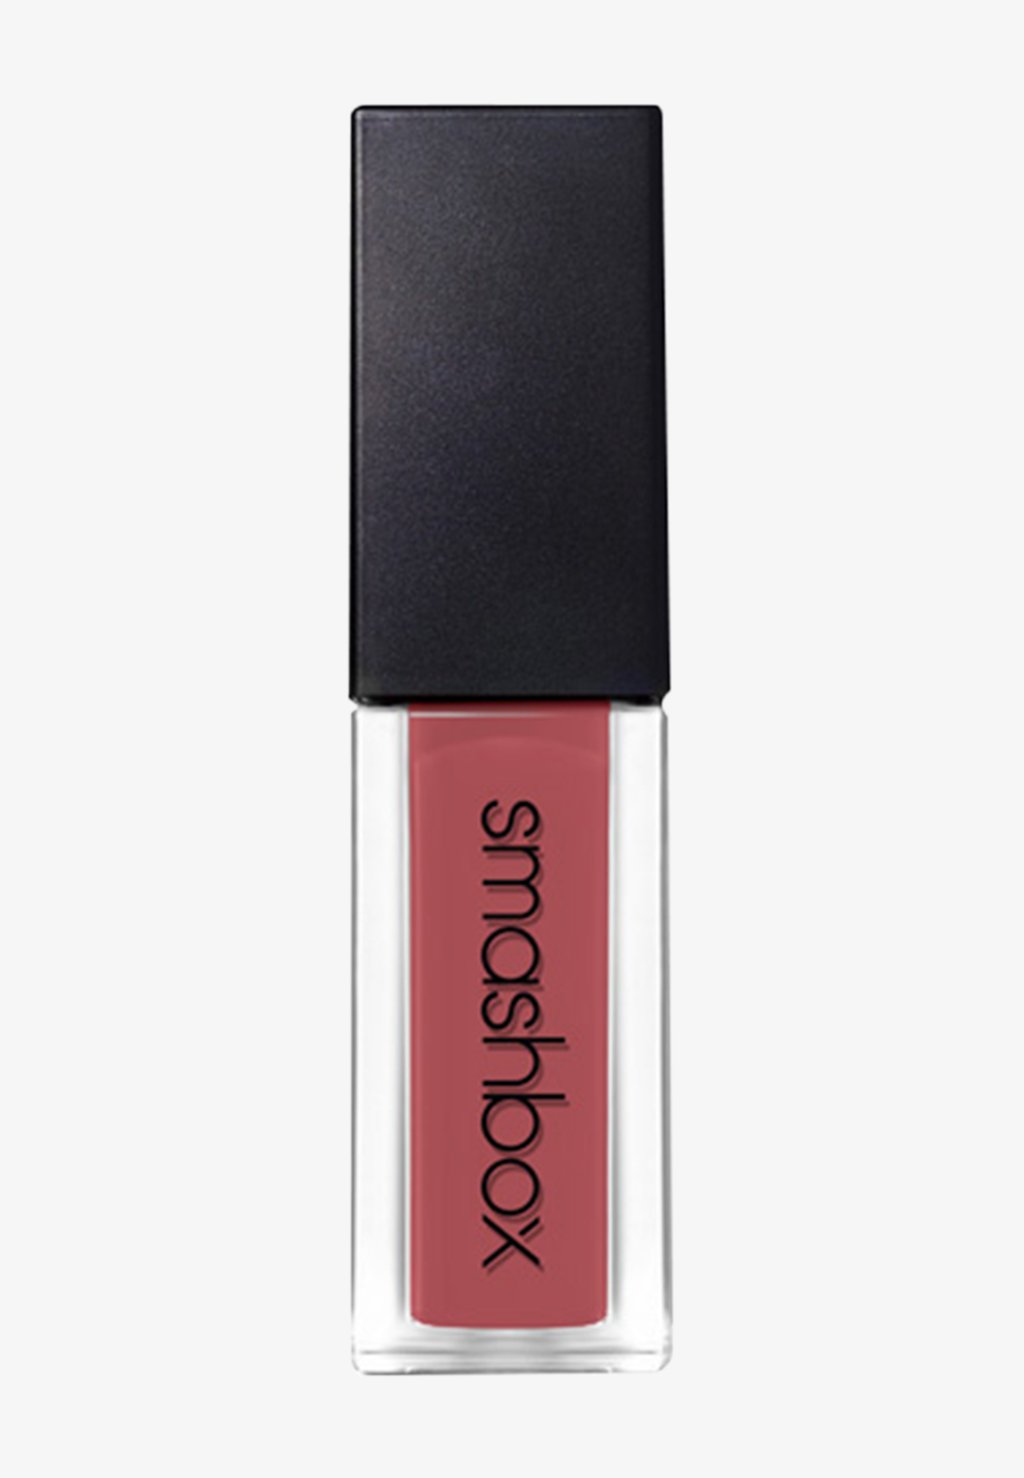 Жидкая помада ALWAYS ON LIQUID LIPSTICK Smashbox, цвет gula-bae smashbox always on liquid lipstick